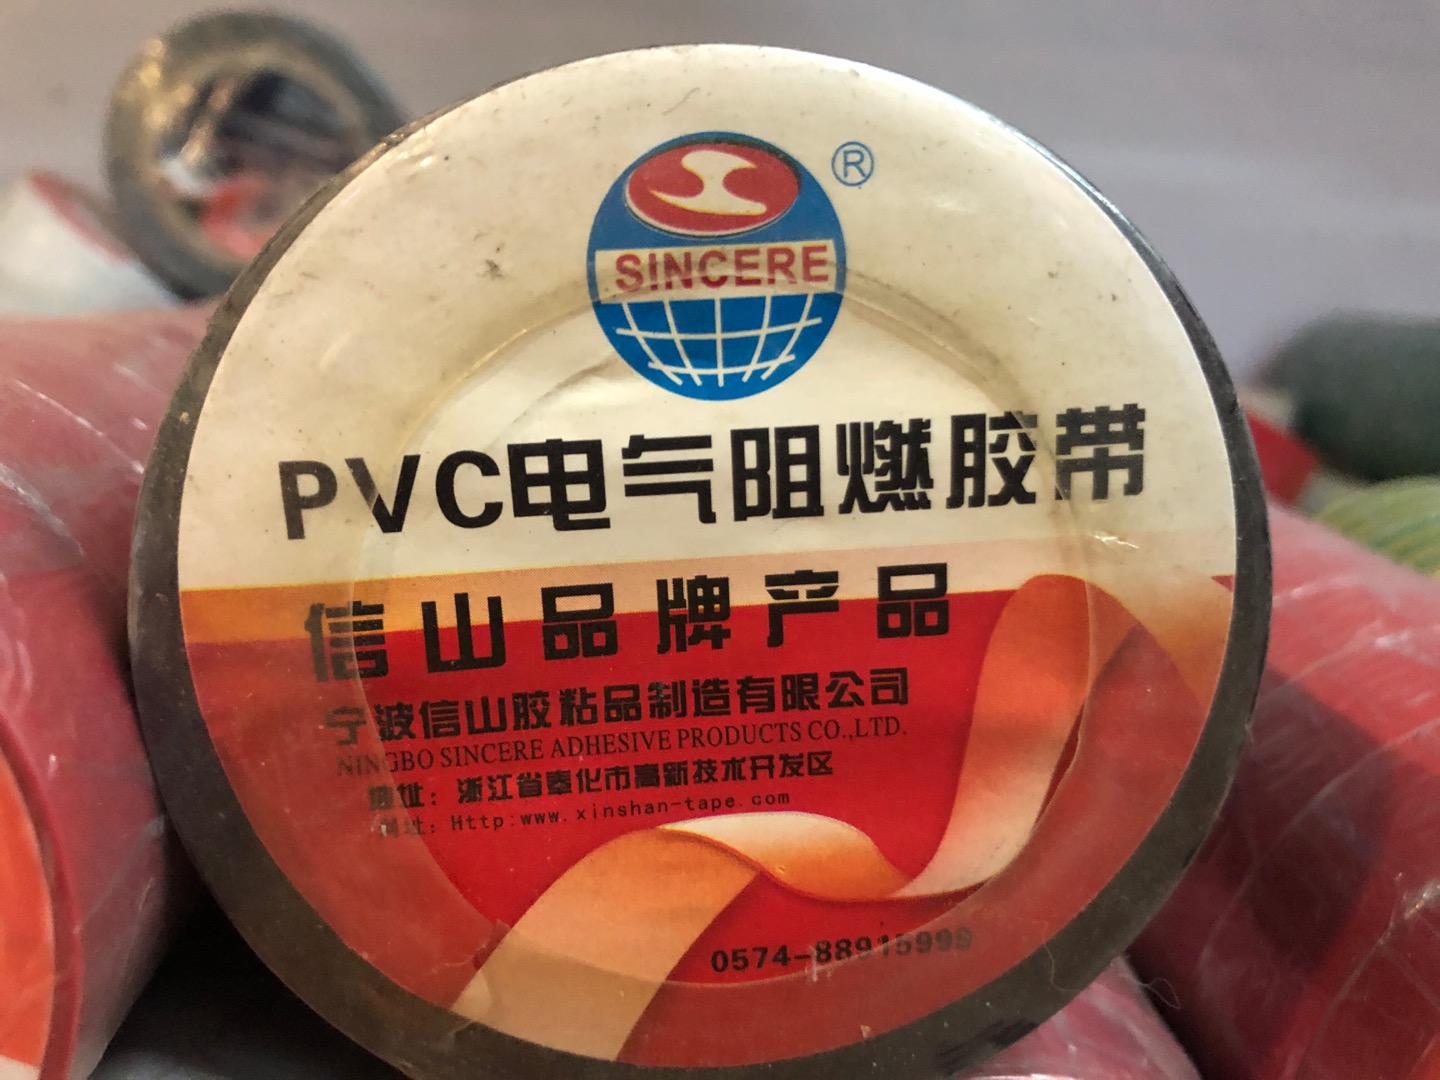 宁波信山胶粘品制造有点公司PVC电气阻燃胶带图